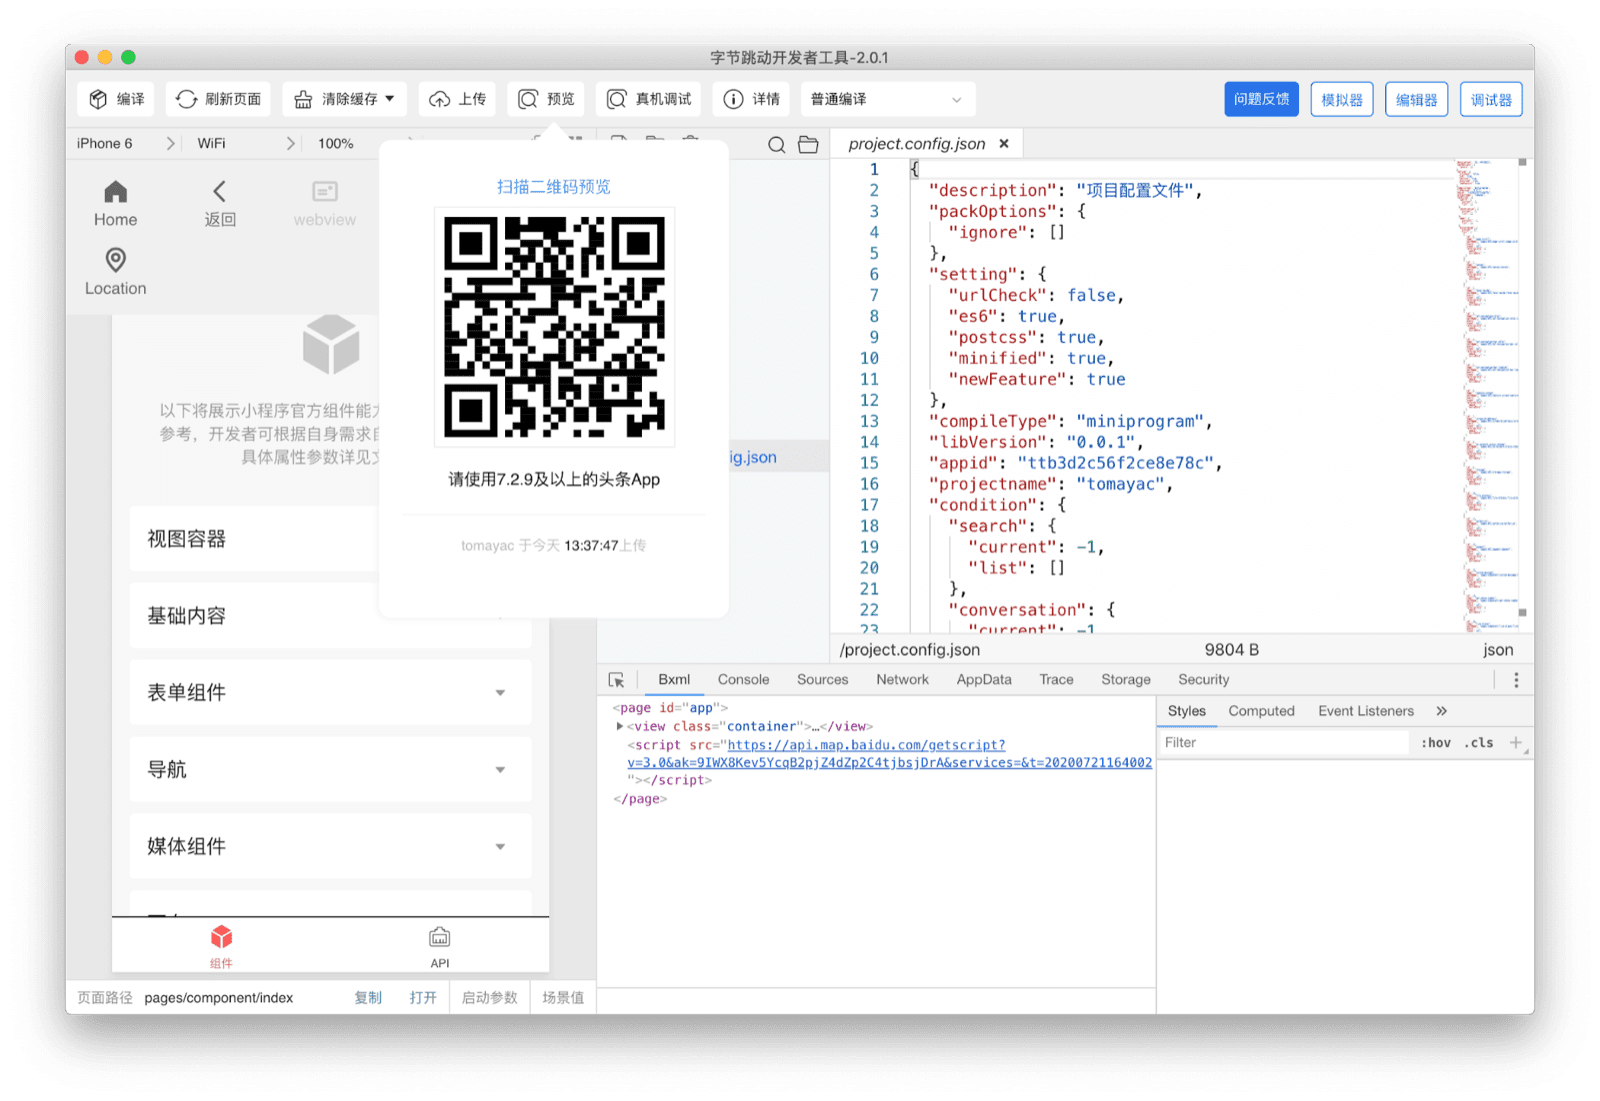 Công cụ ByteDance cho nhà phát triển hiển thị một mã QR mà người dùng có thể quét bằng ứng dụng Douyin để xem ứng dụng nhỏ hiện tại trên thiết bị của họ.